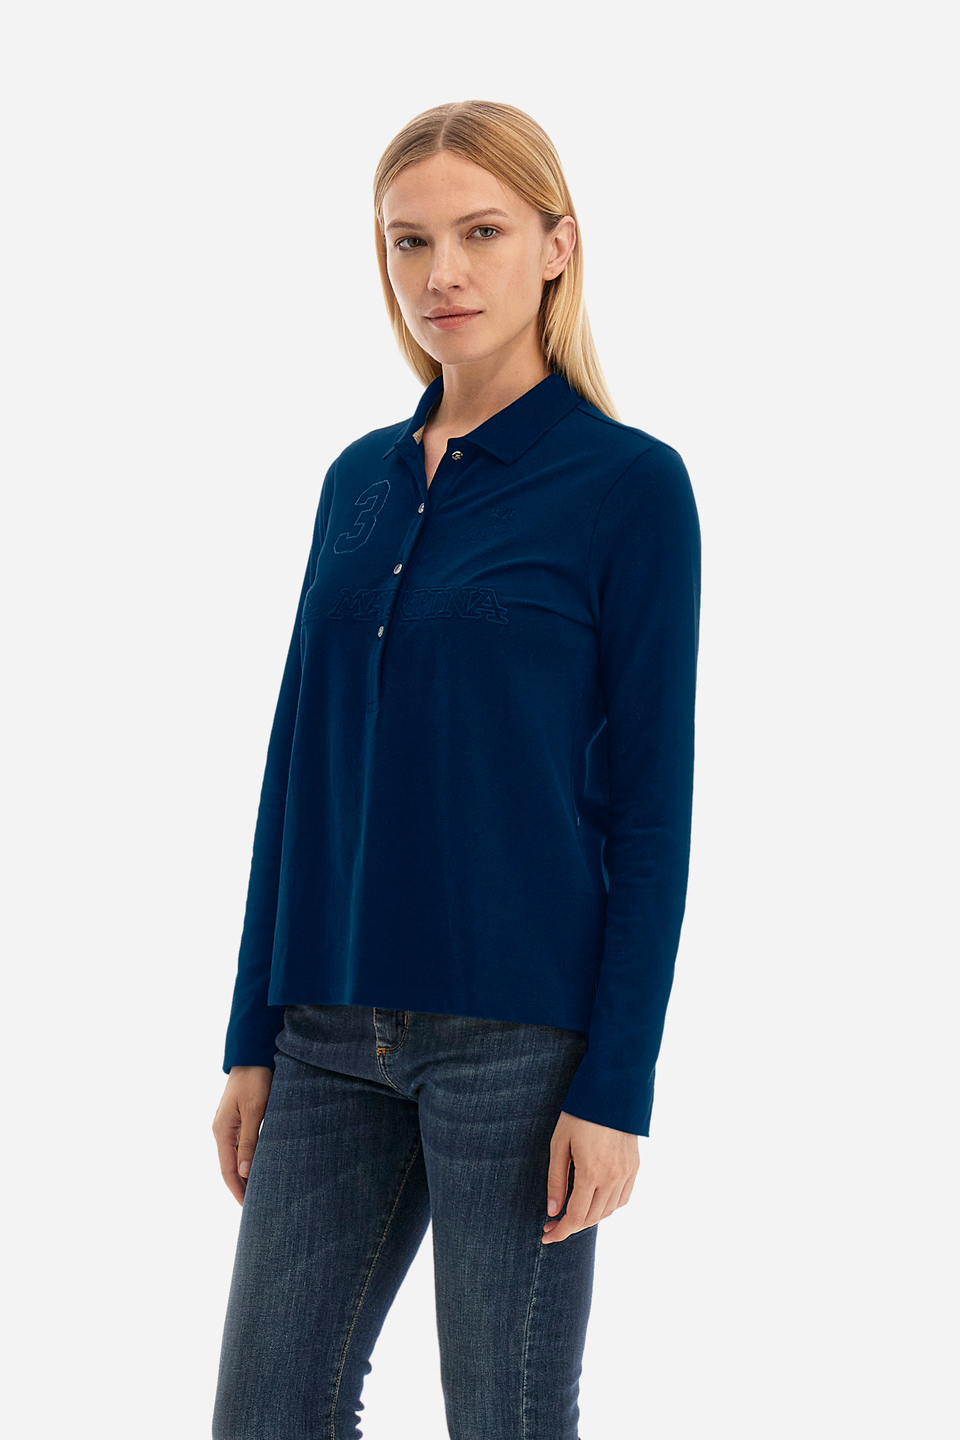 Damen -Poloshirt regular fit - Wladyslawa | La Martina - Official Online Shop